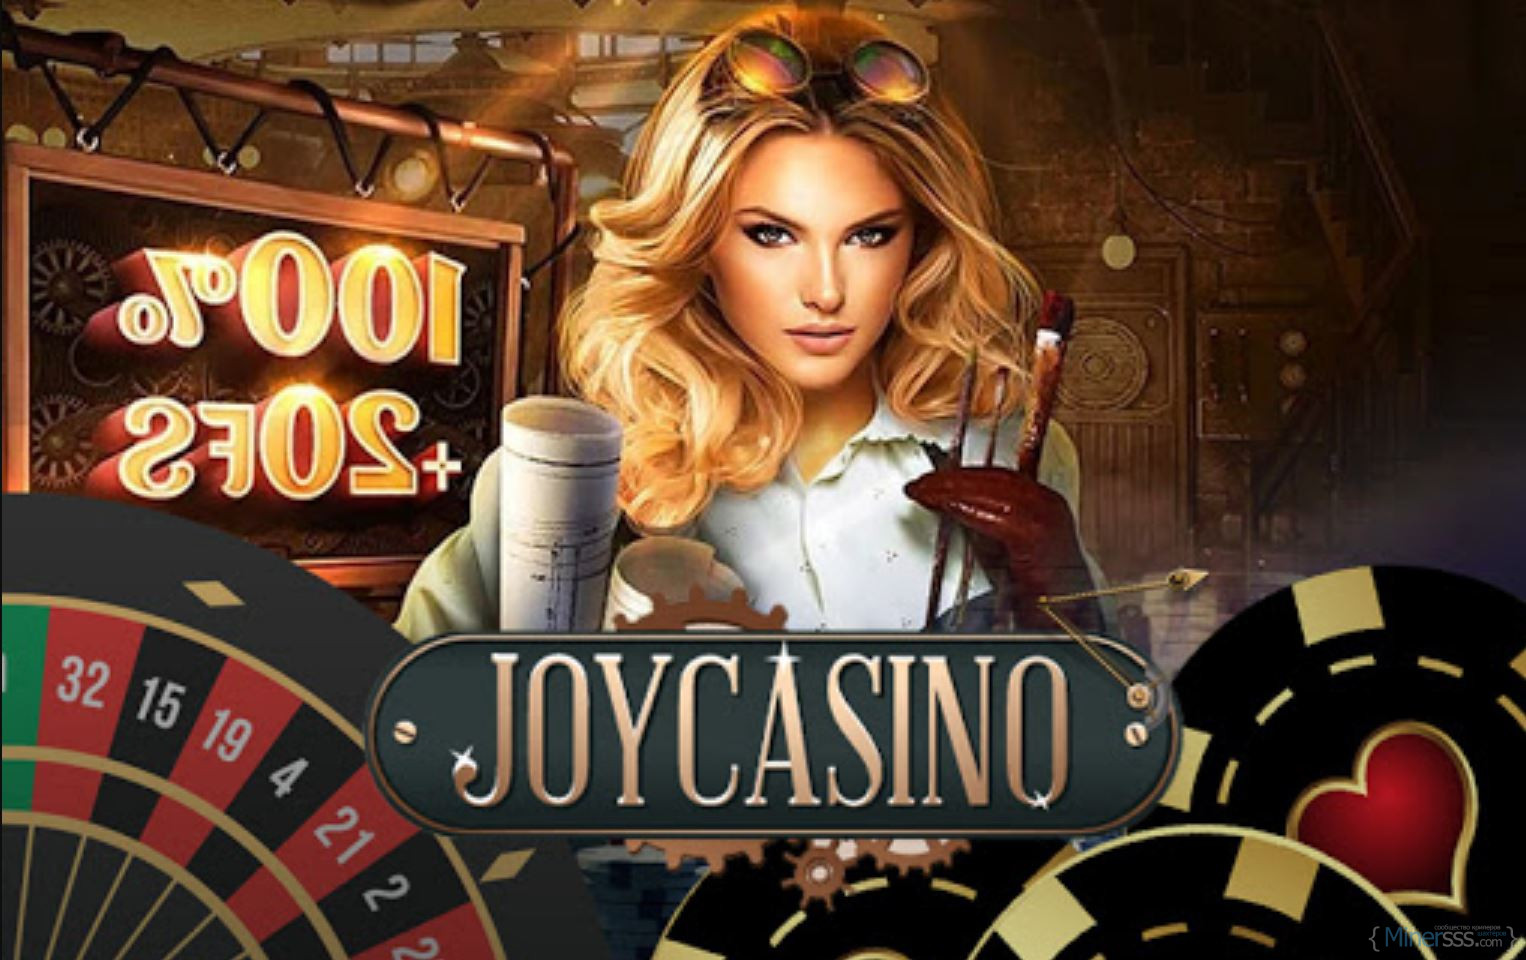 Joy casino рабочее зеркало joy casino top. Реклама казино. Джой казино. Самое престижное казино.